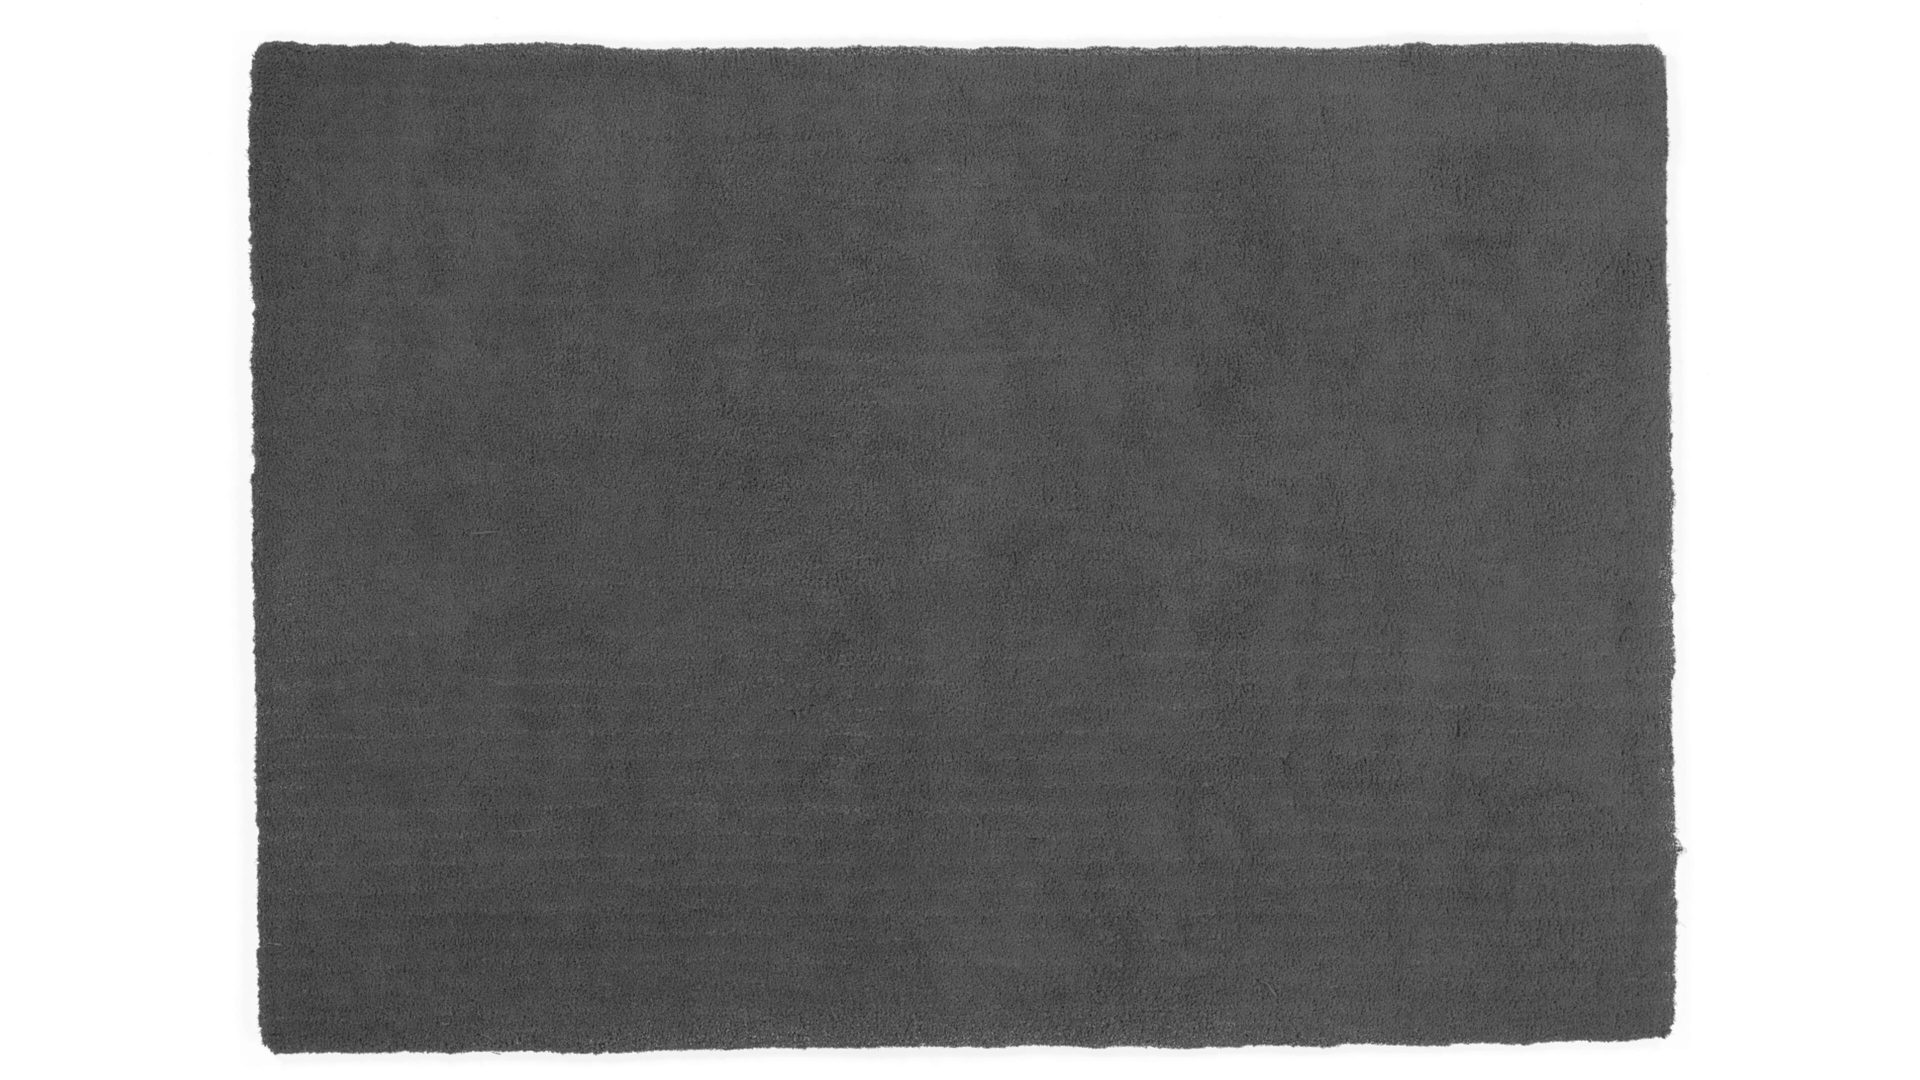 Hochflorteppich Oci aus Kunstfaser in Schwarz Hochflorteppich Soft Dream für Ihre Wohnaccessoires dunkelgraue Kunstfaser – ca. 65 x 130 cm